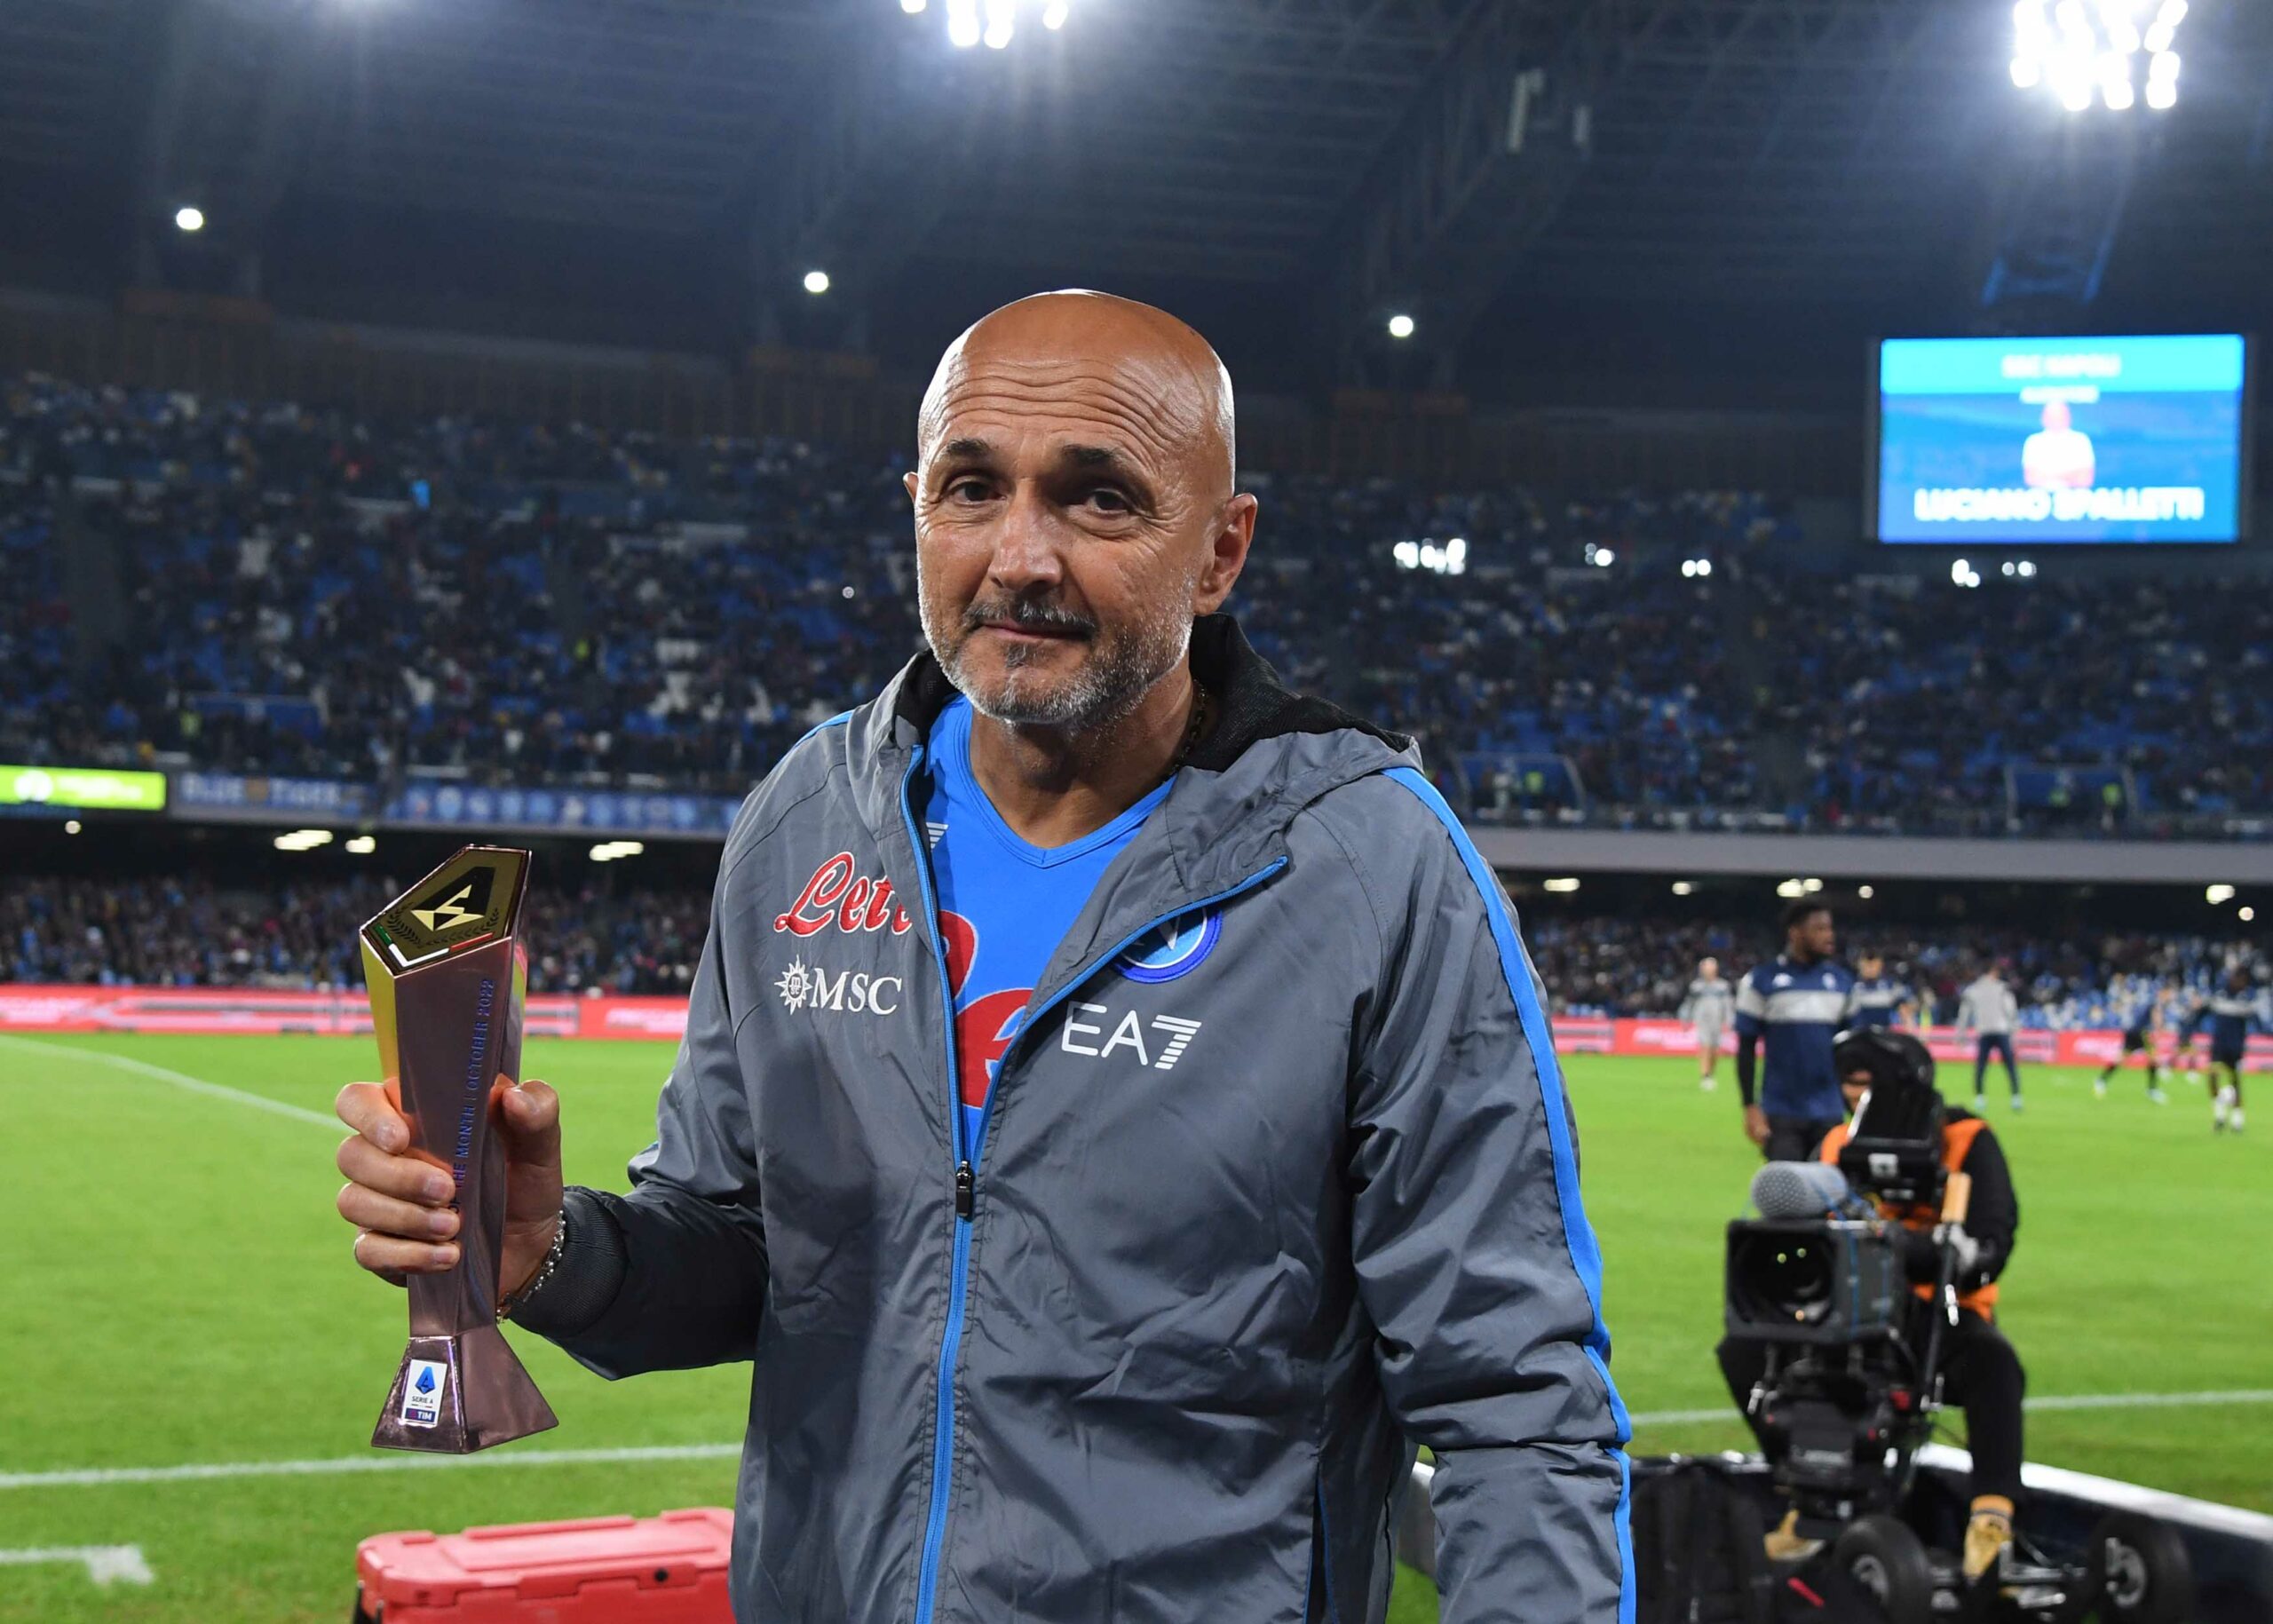 Napoli-Empoli 2-0, Spalletti: “Successo importante per restare in alto, ma cammino è lunghissimo” - NAPOLI CALCIO